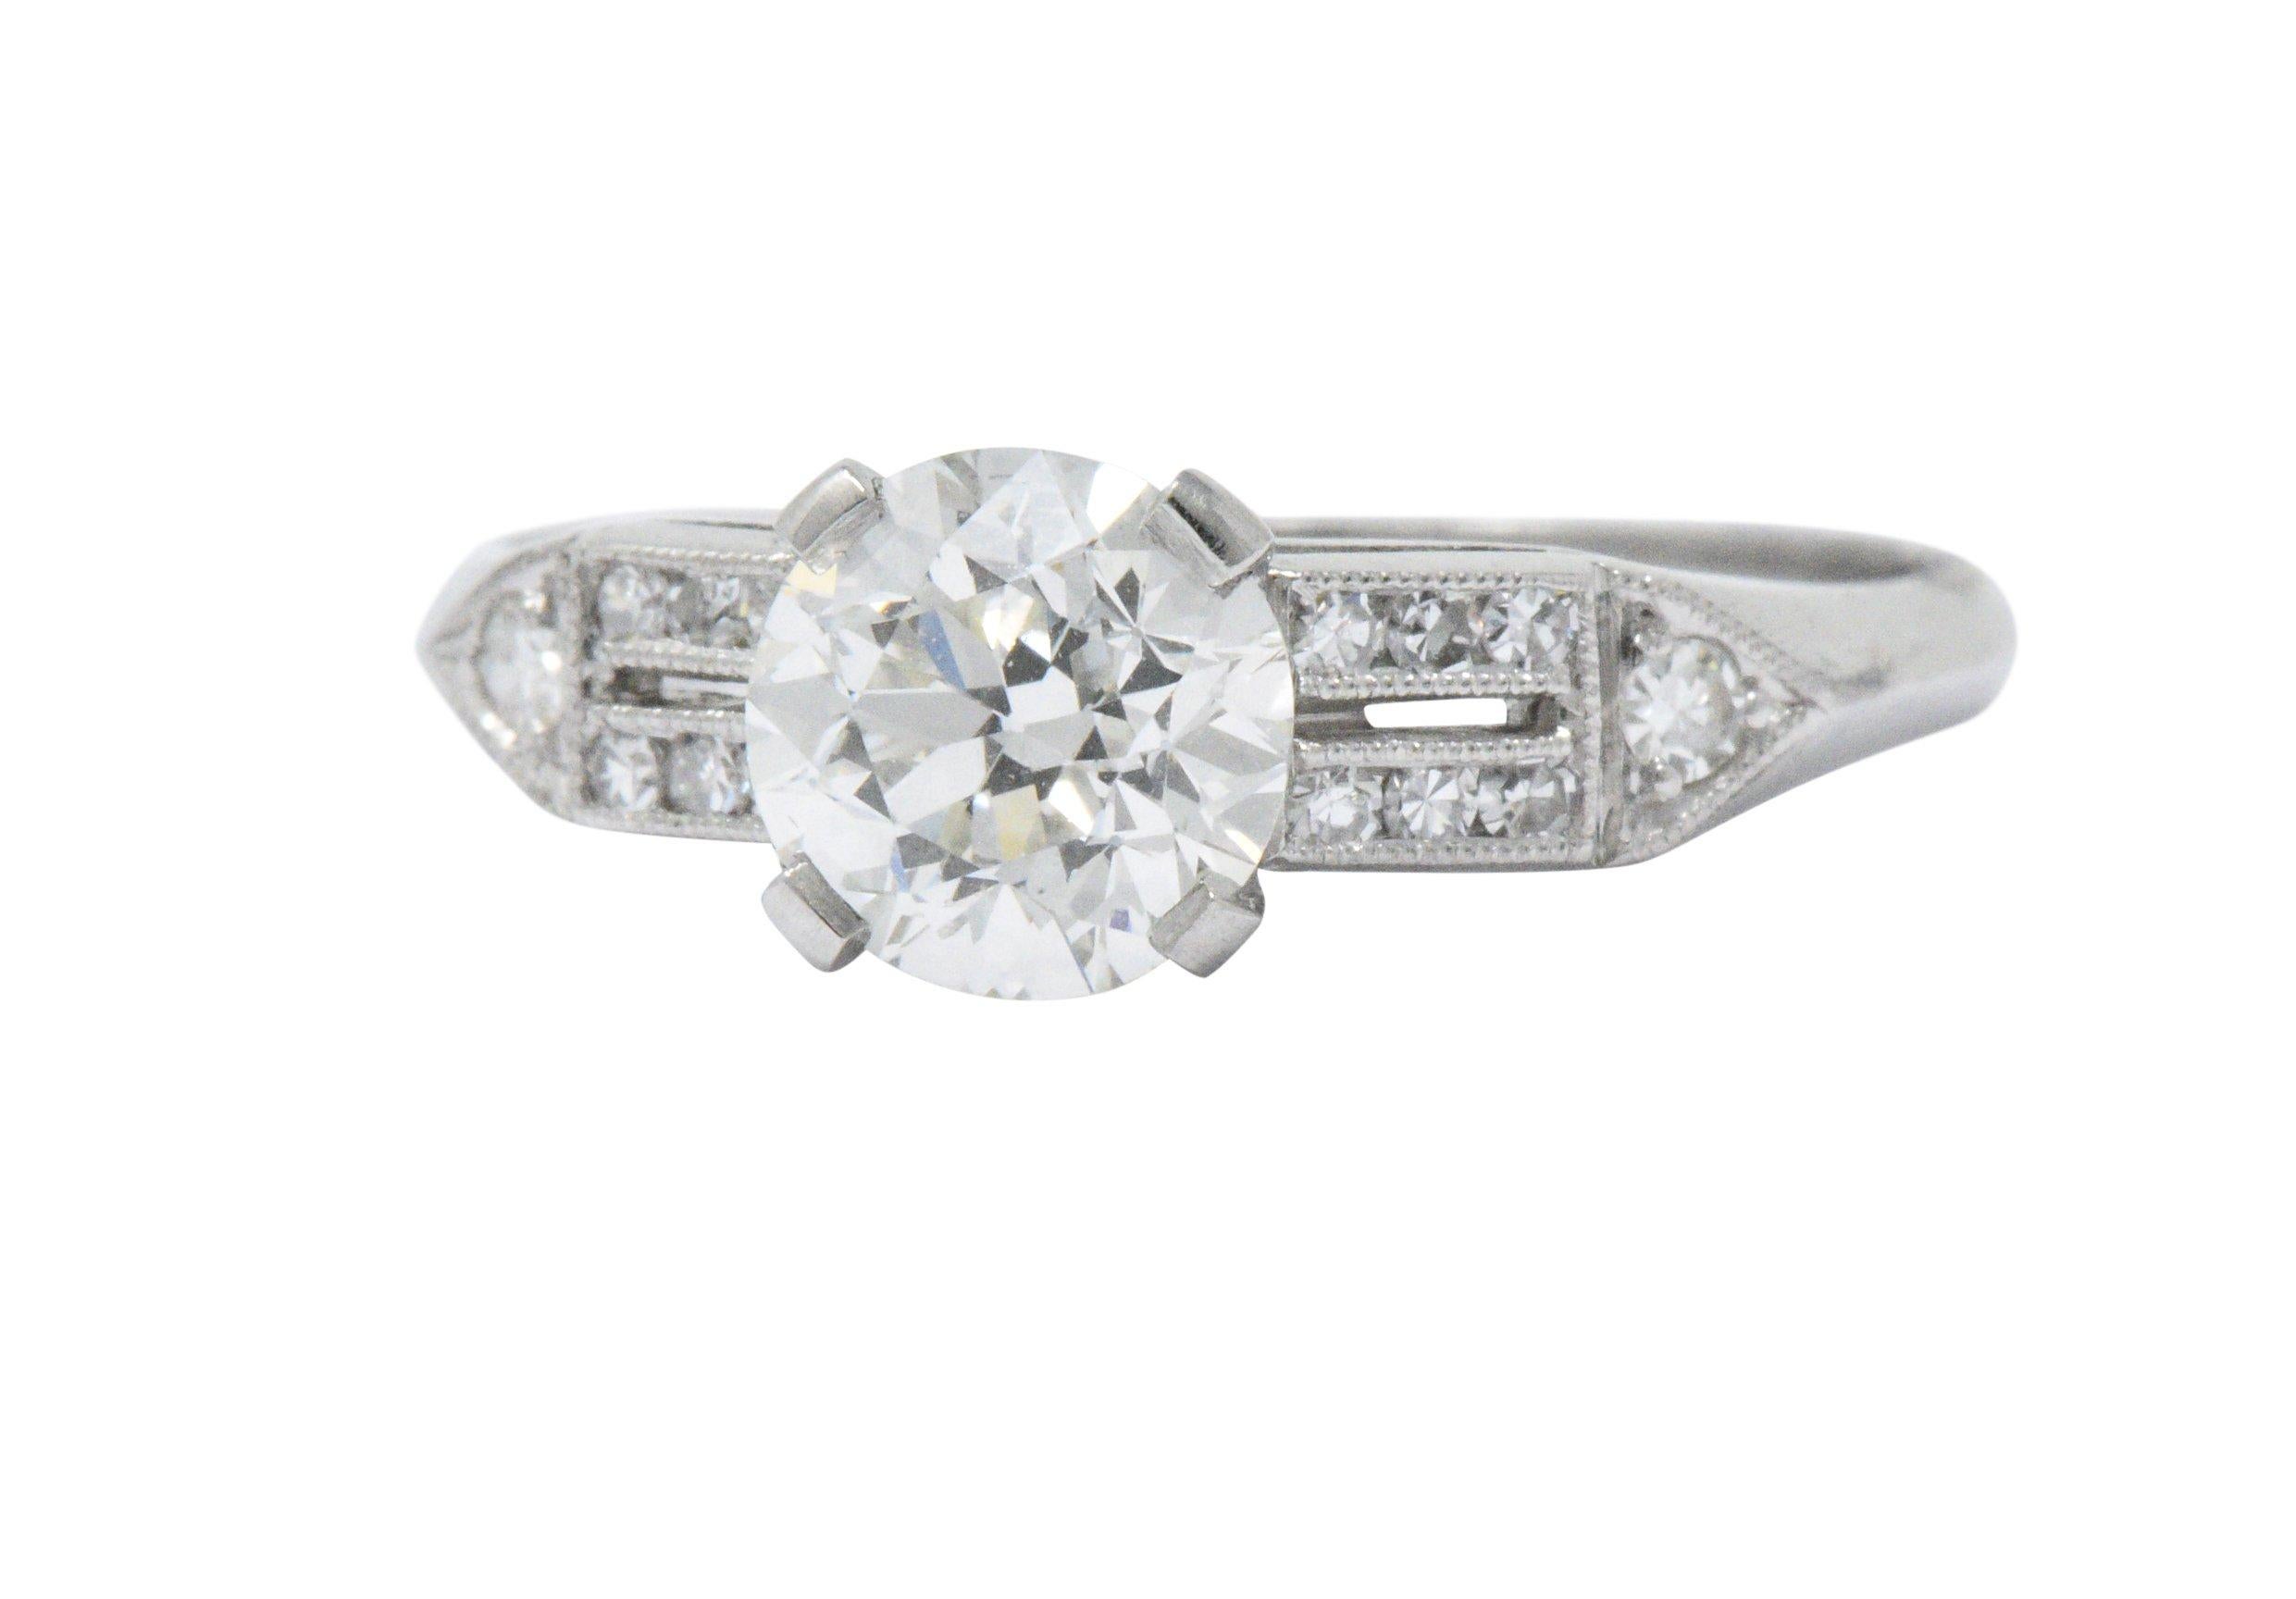 Elegant Art Deco 1.23 CTW Diamond & Platinum Alternative Ring GIA Certified 2